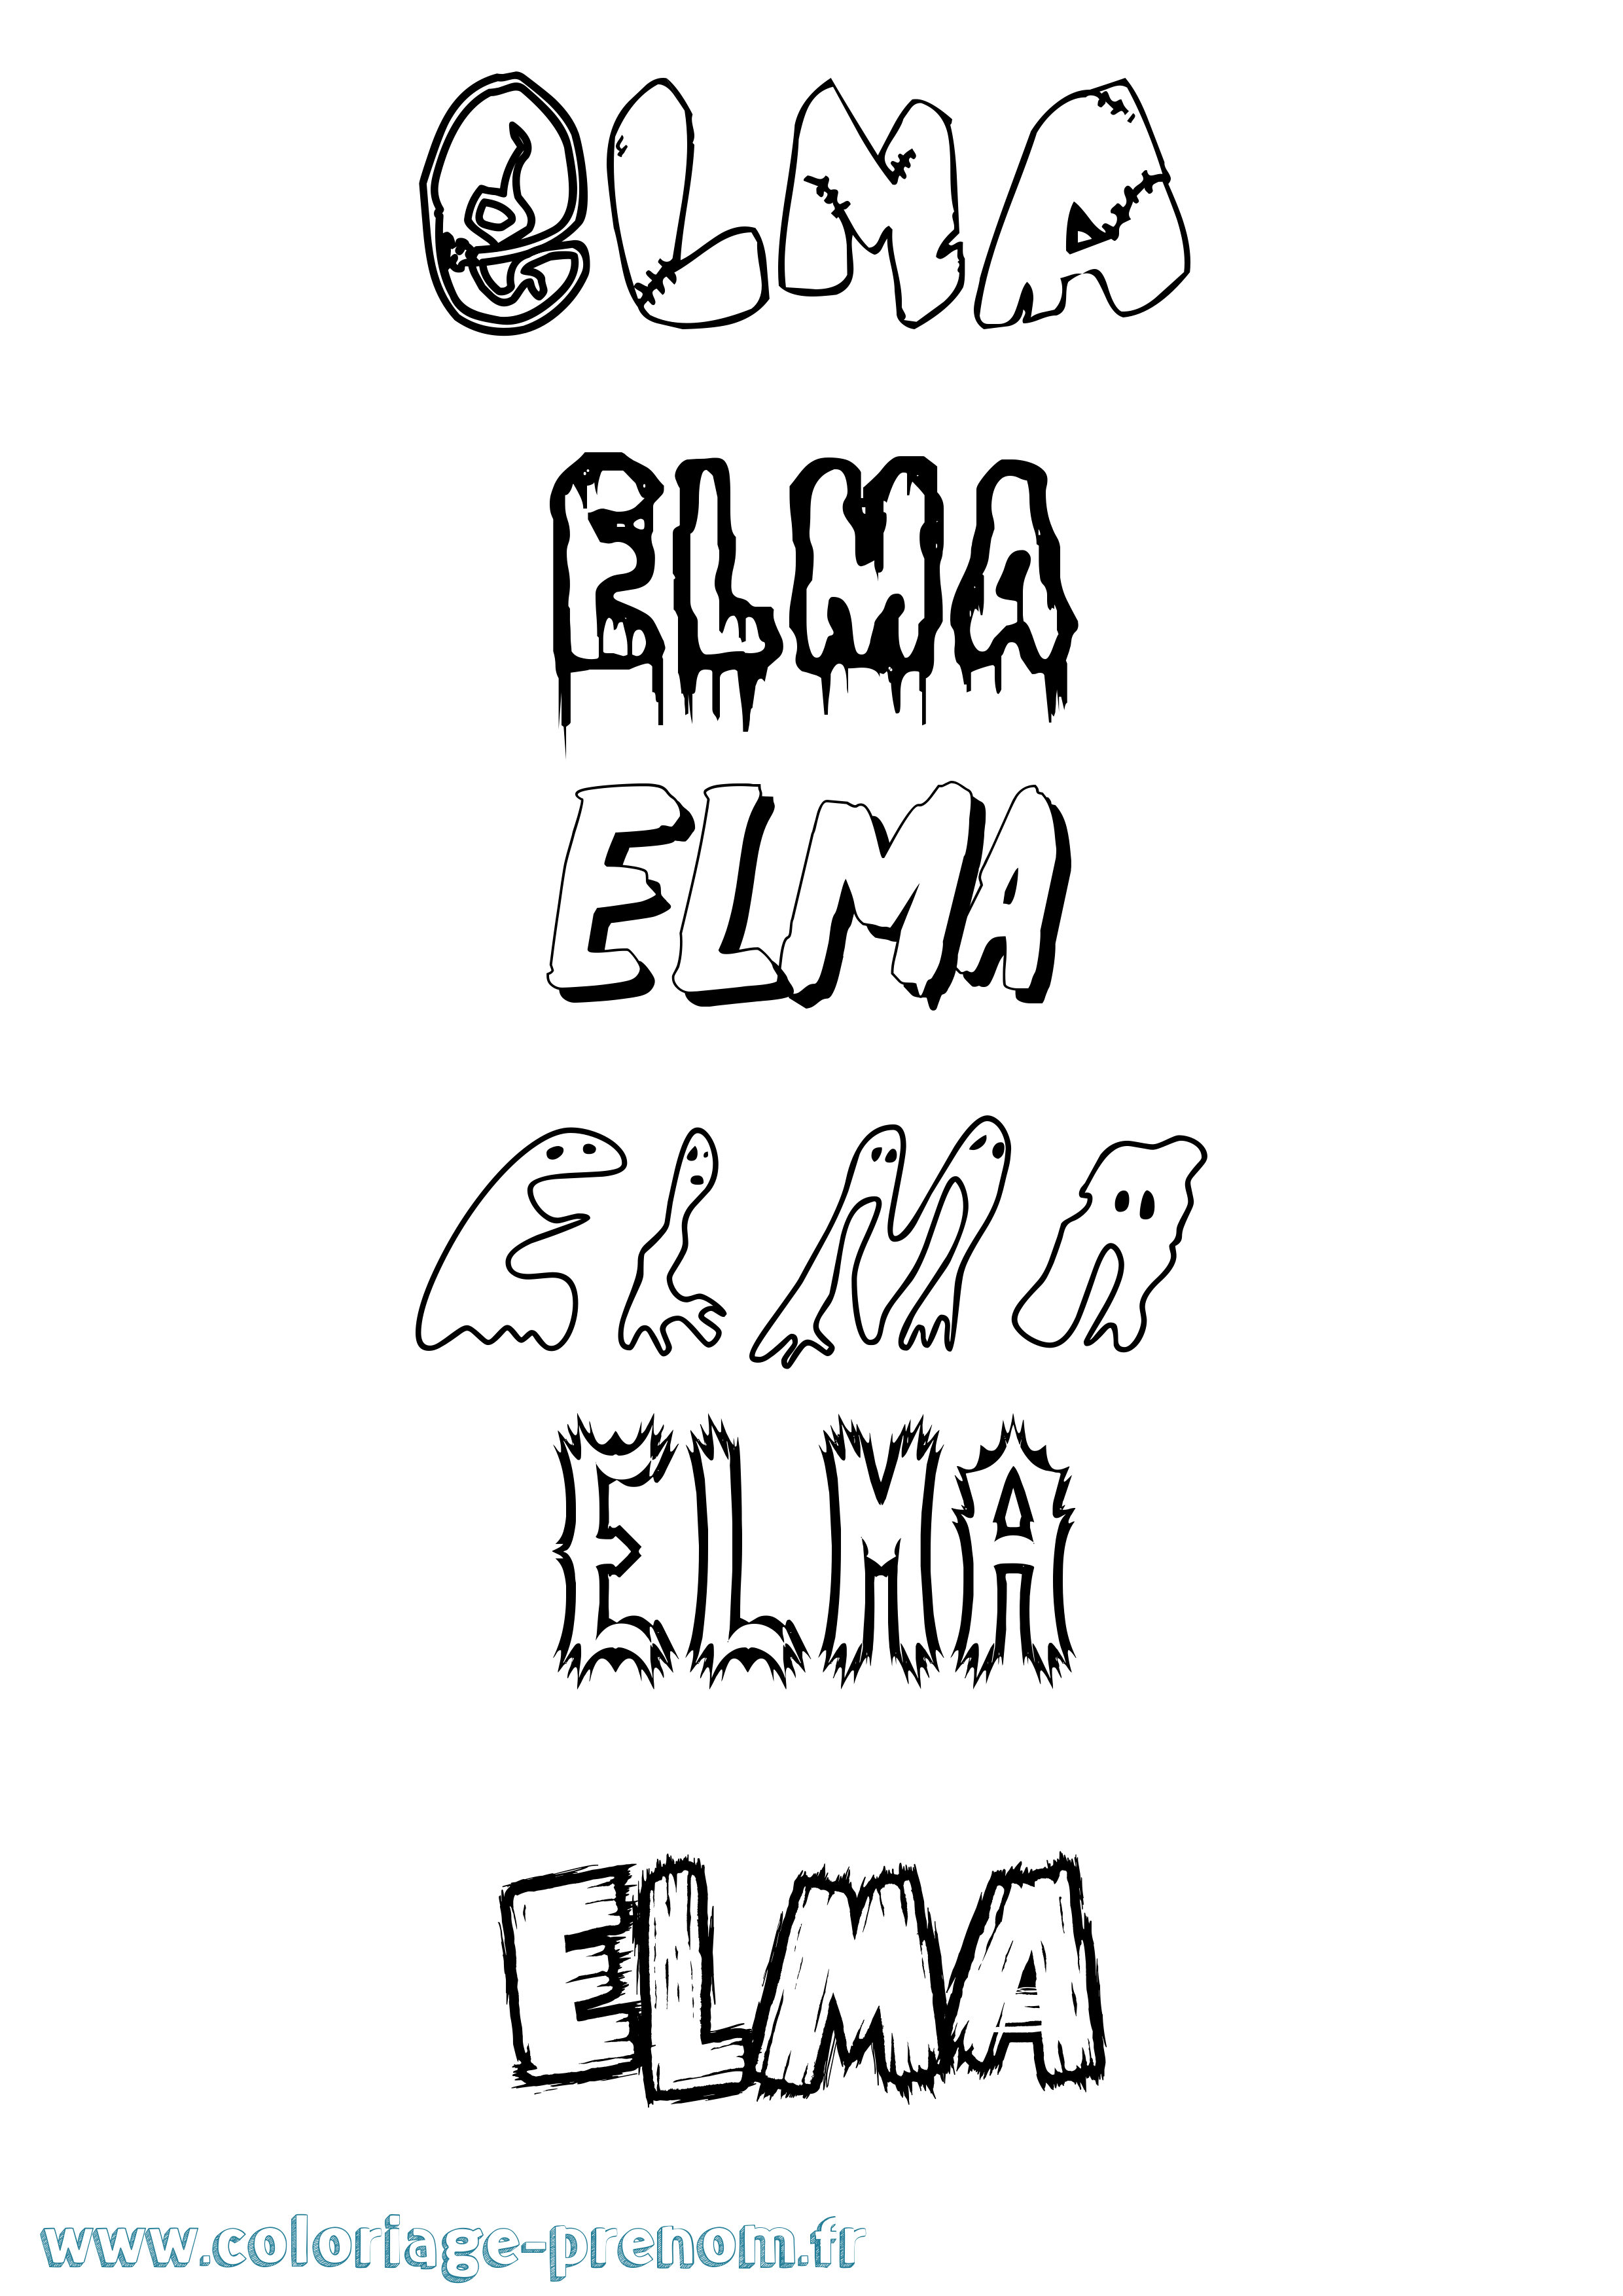 Coloriage prénom Elma Frisson